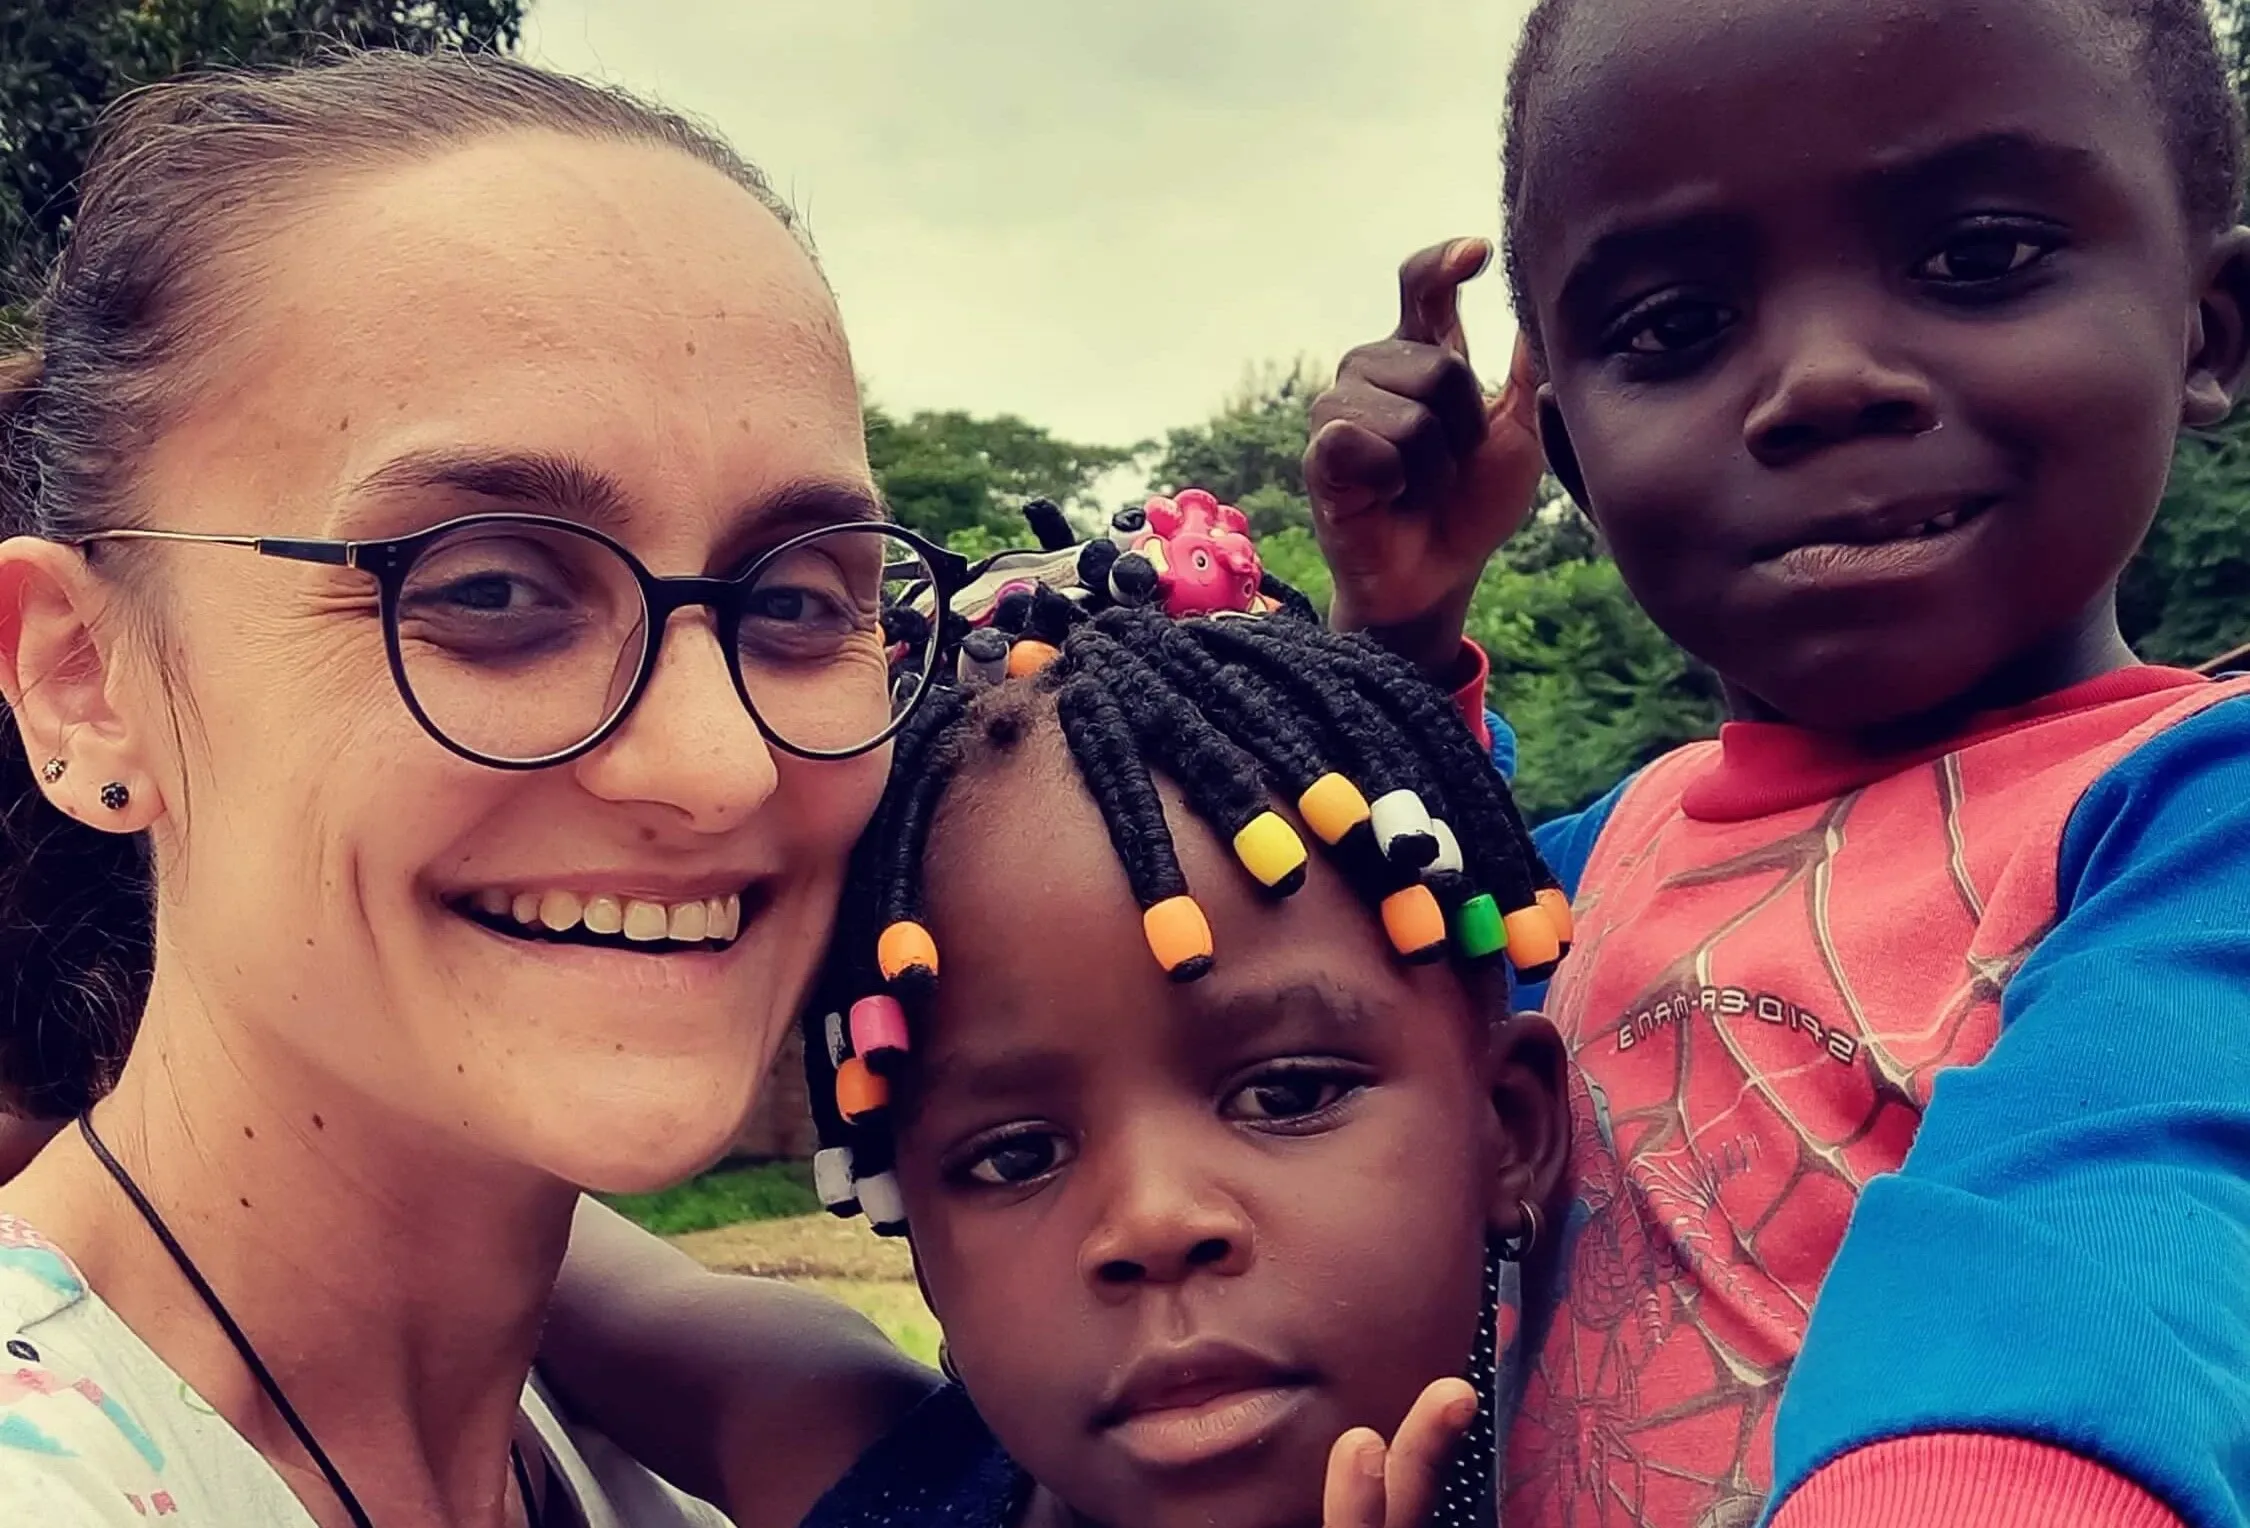 Jak wygląda praca pielęgniarki na misji w Afryce? Rozmowa z Agnieszką Nowak, polską pielęgniarką pracującą w Republice Demokratycznej Konga